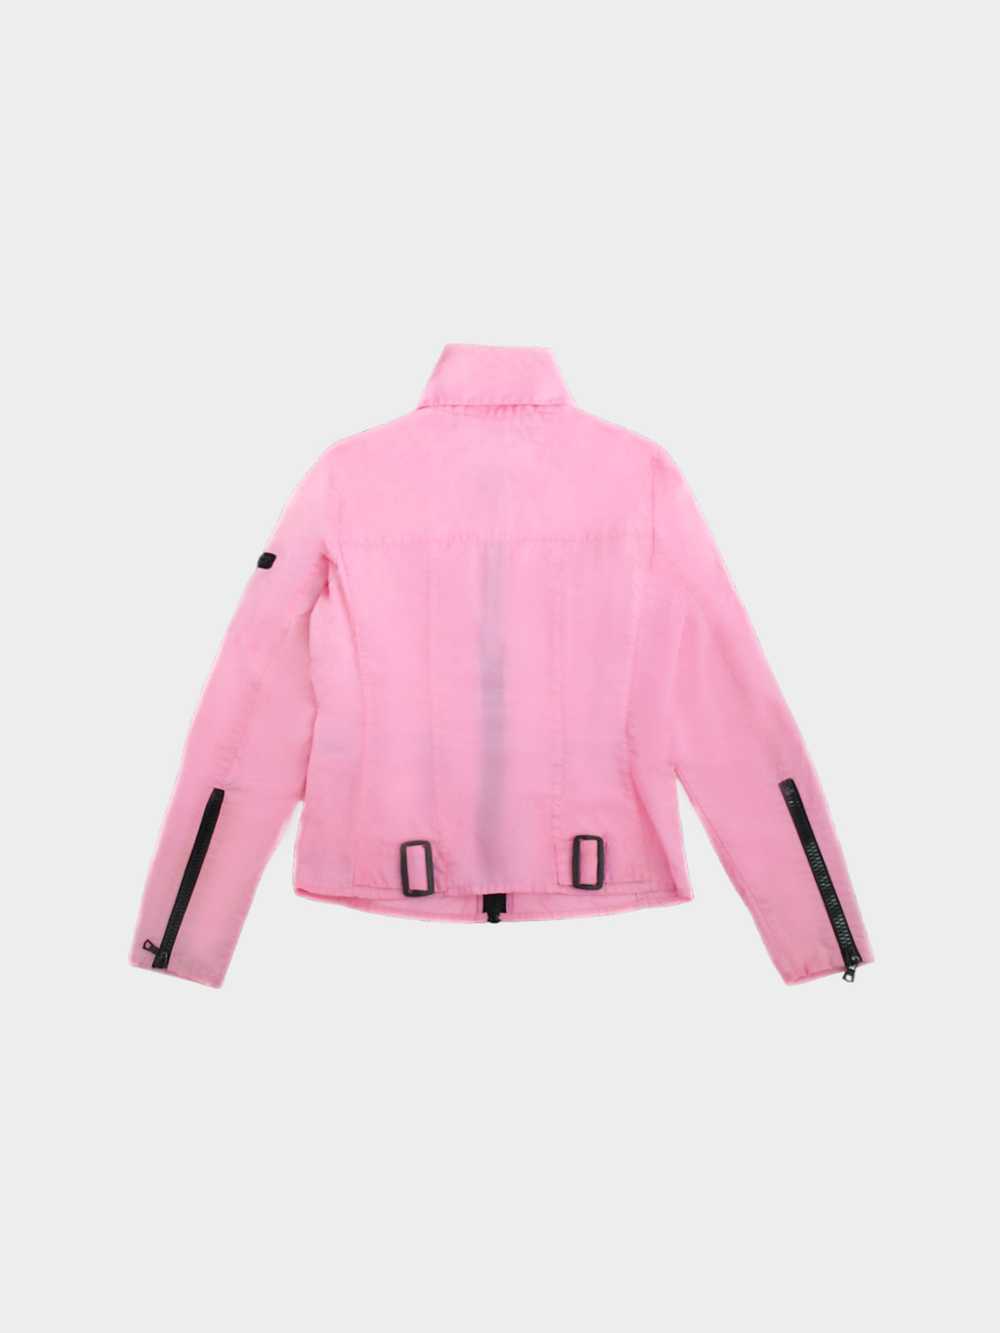 Miu Miu SS 1999 Pink Polyester Jacket - image 2